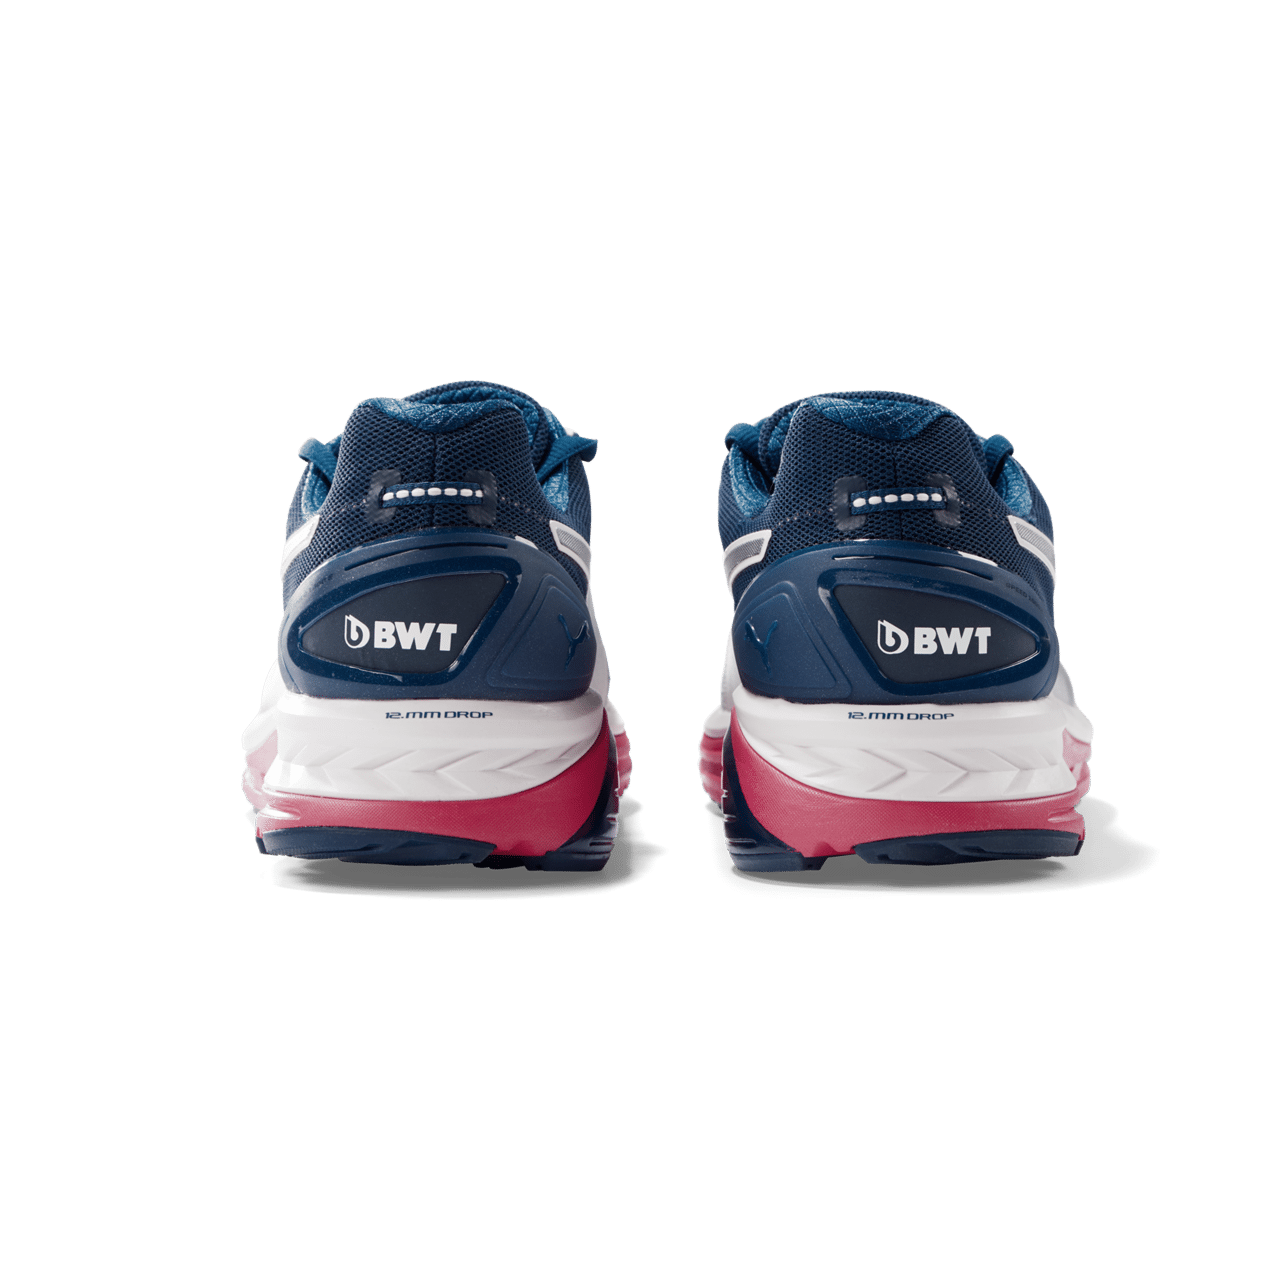 BWT Laufschuh in blau, weiß und pink